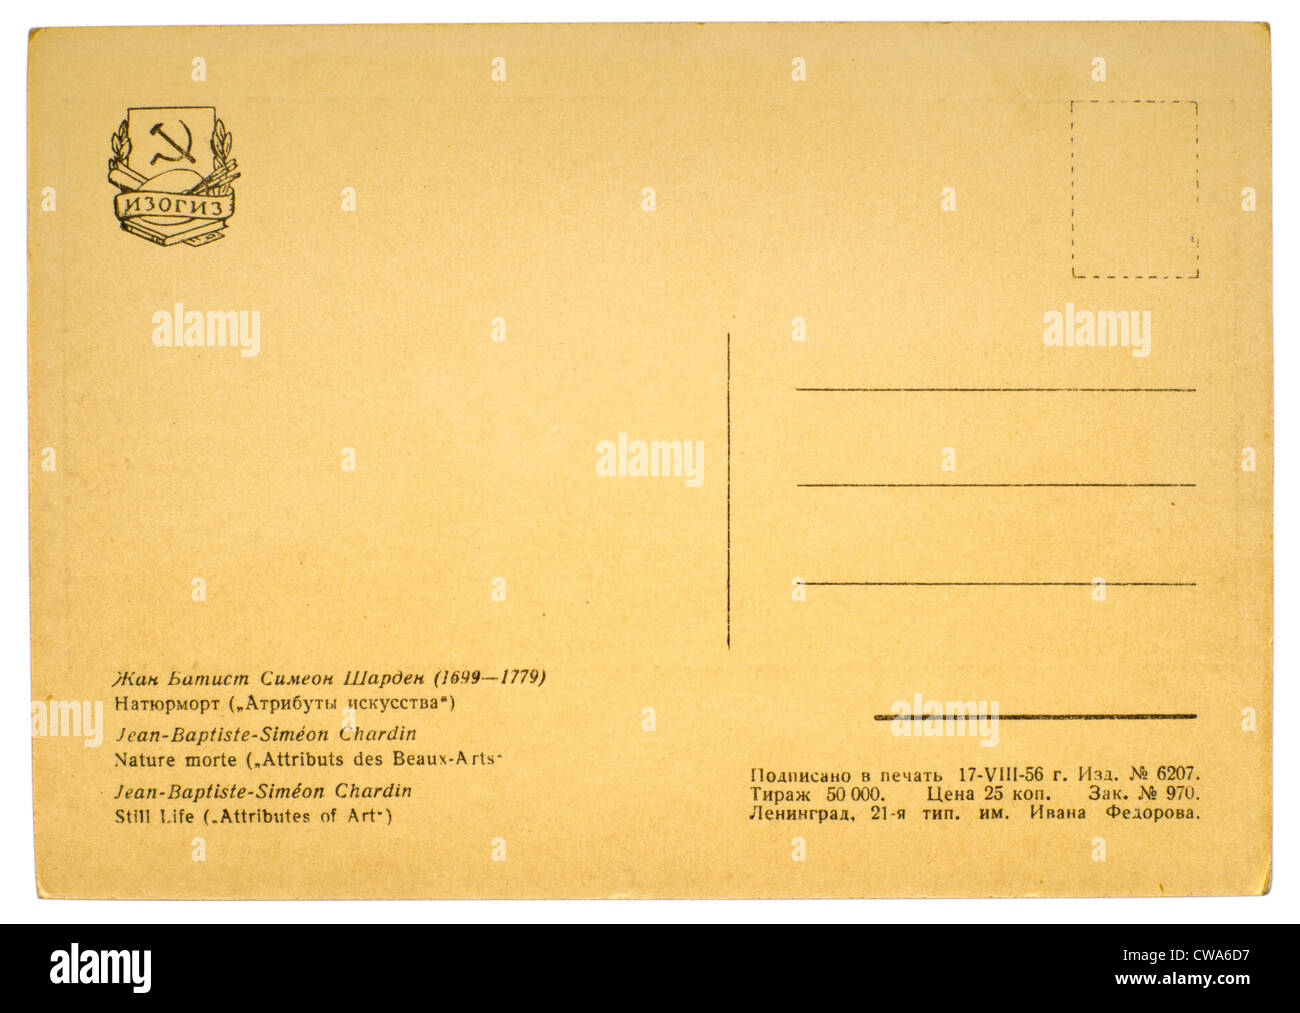 Il retro di una vecchia cartolina postale isolato su bianco Foto Stock